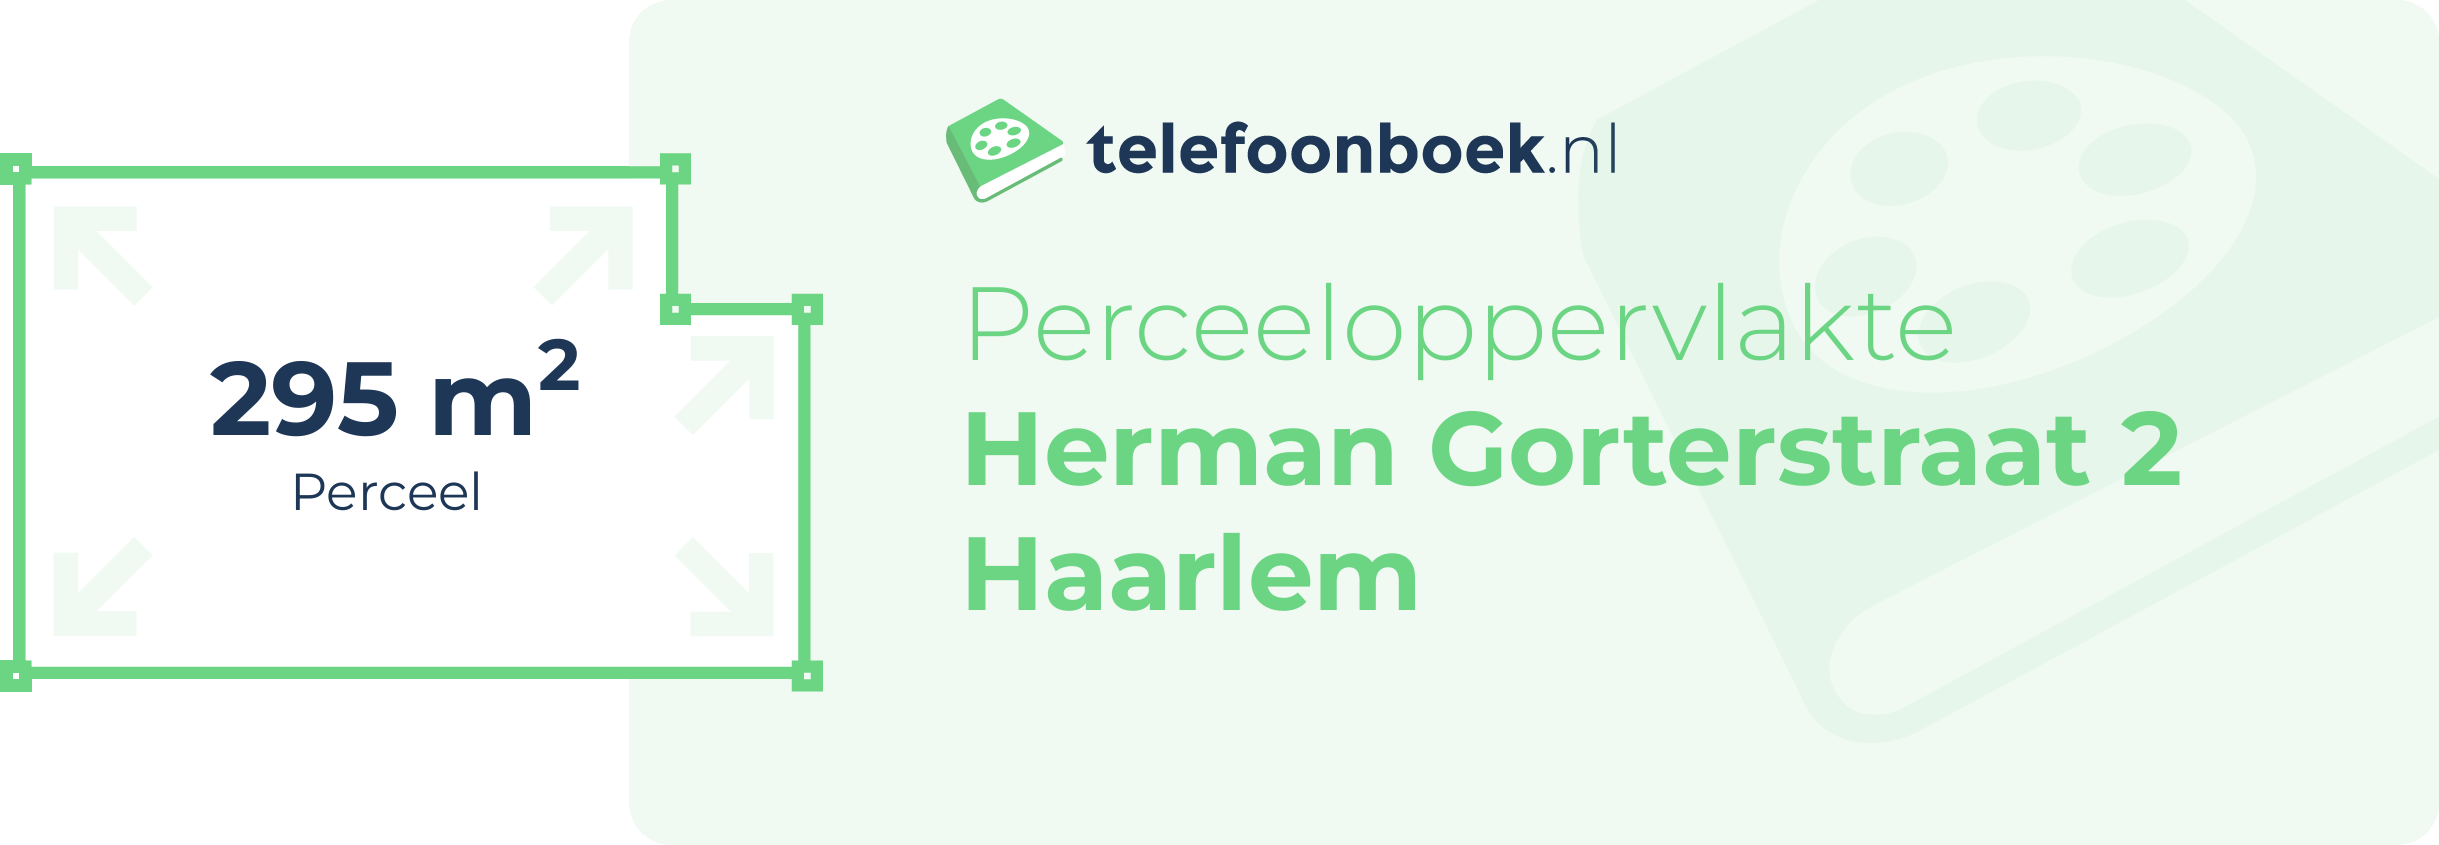 Perceeloppervlakte Herman Gorterstraat 2 Haarlem